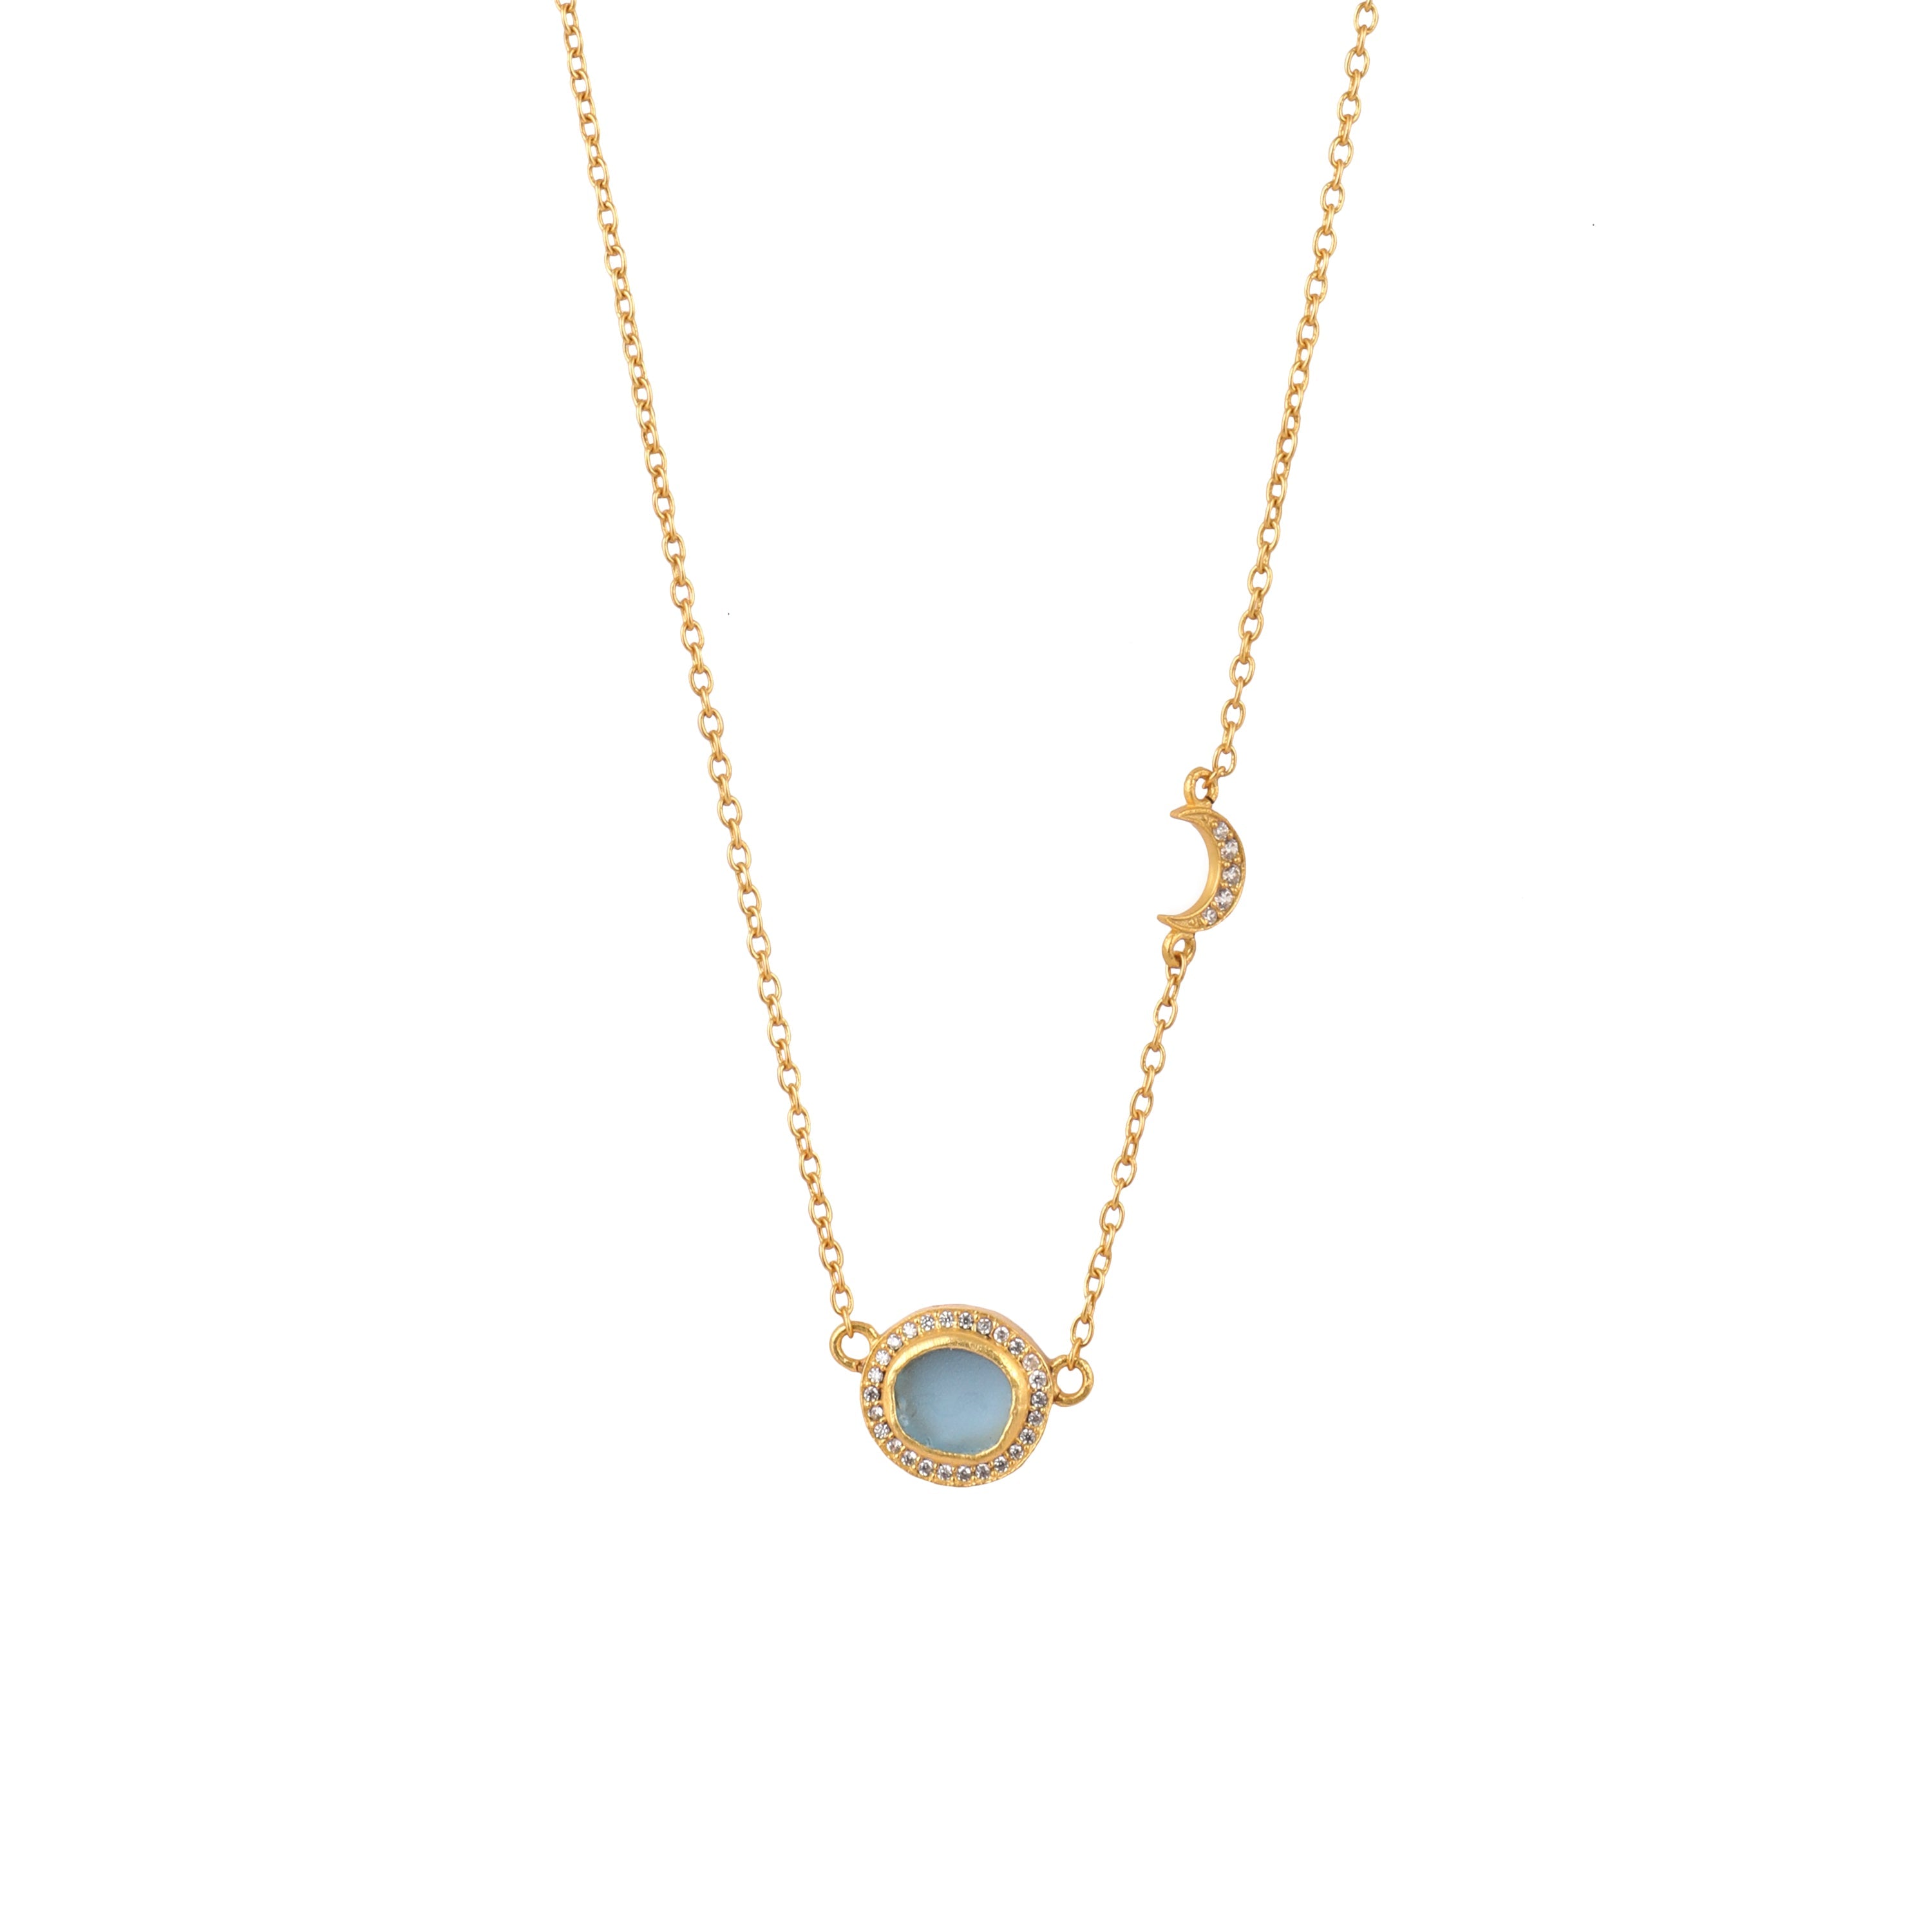 March Birthstone Necklace - Swiss Blue Topaz | Linjer Jewelry